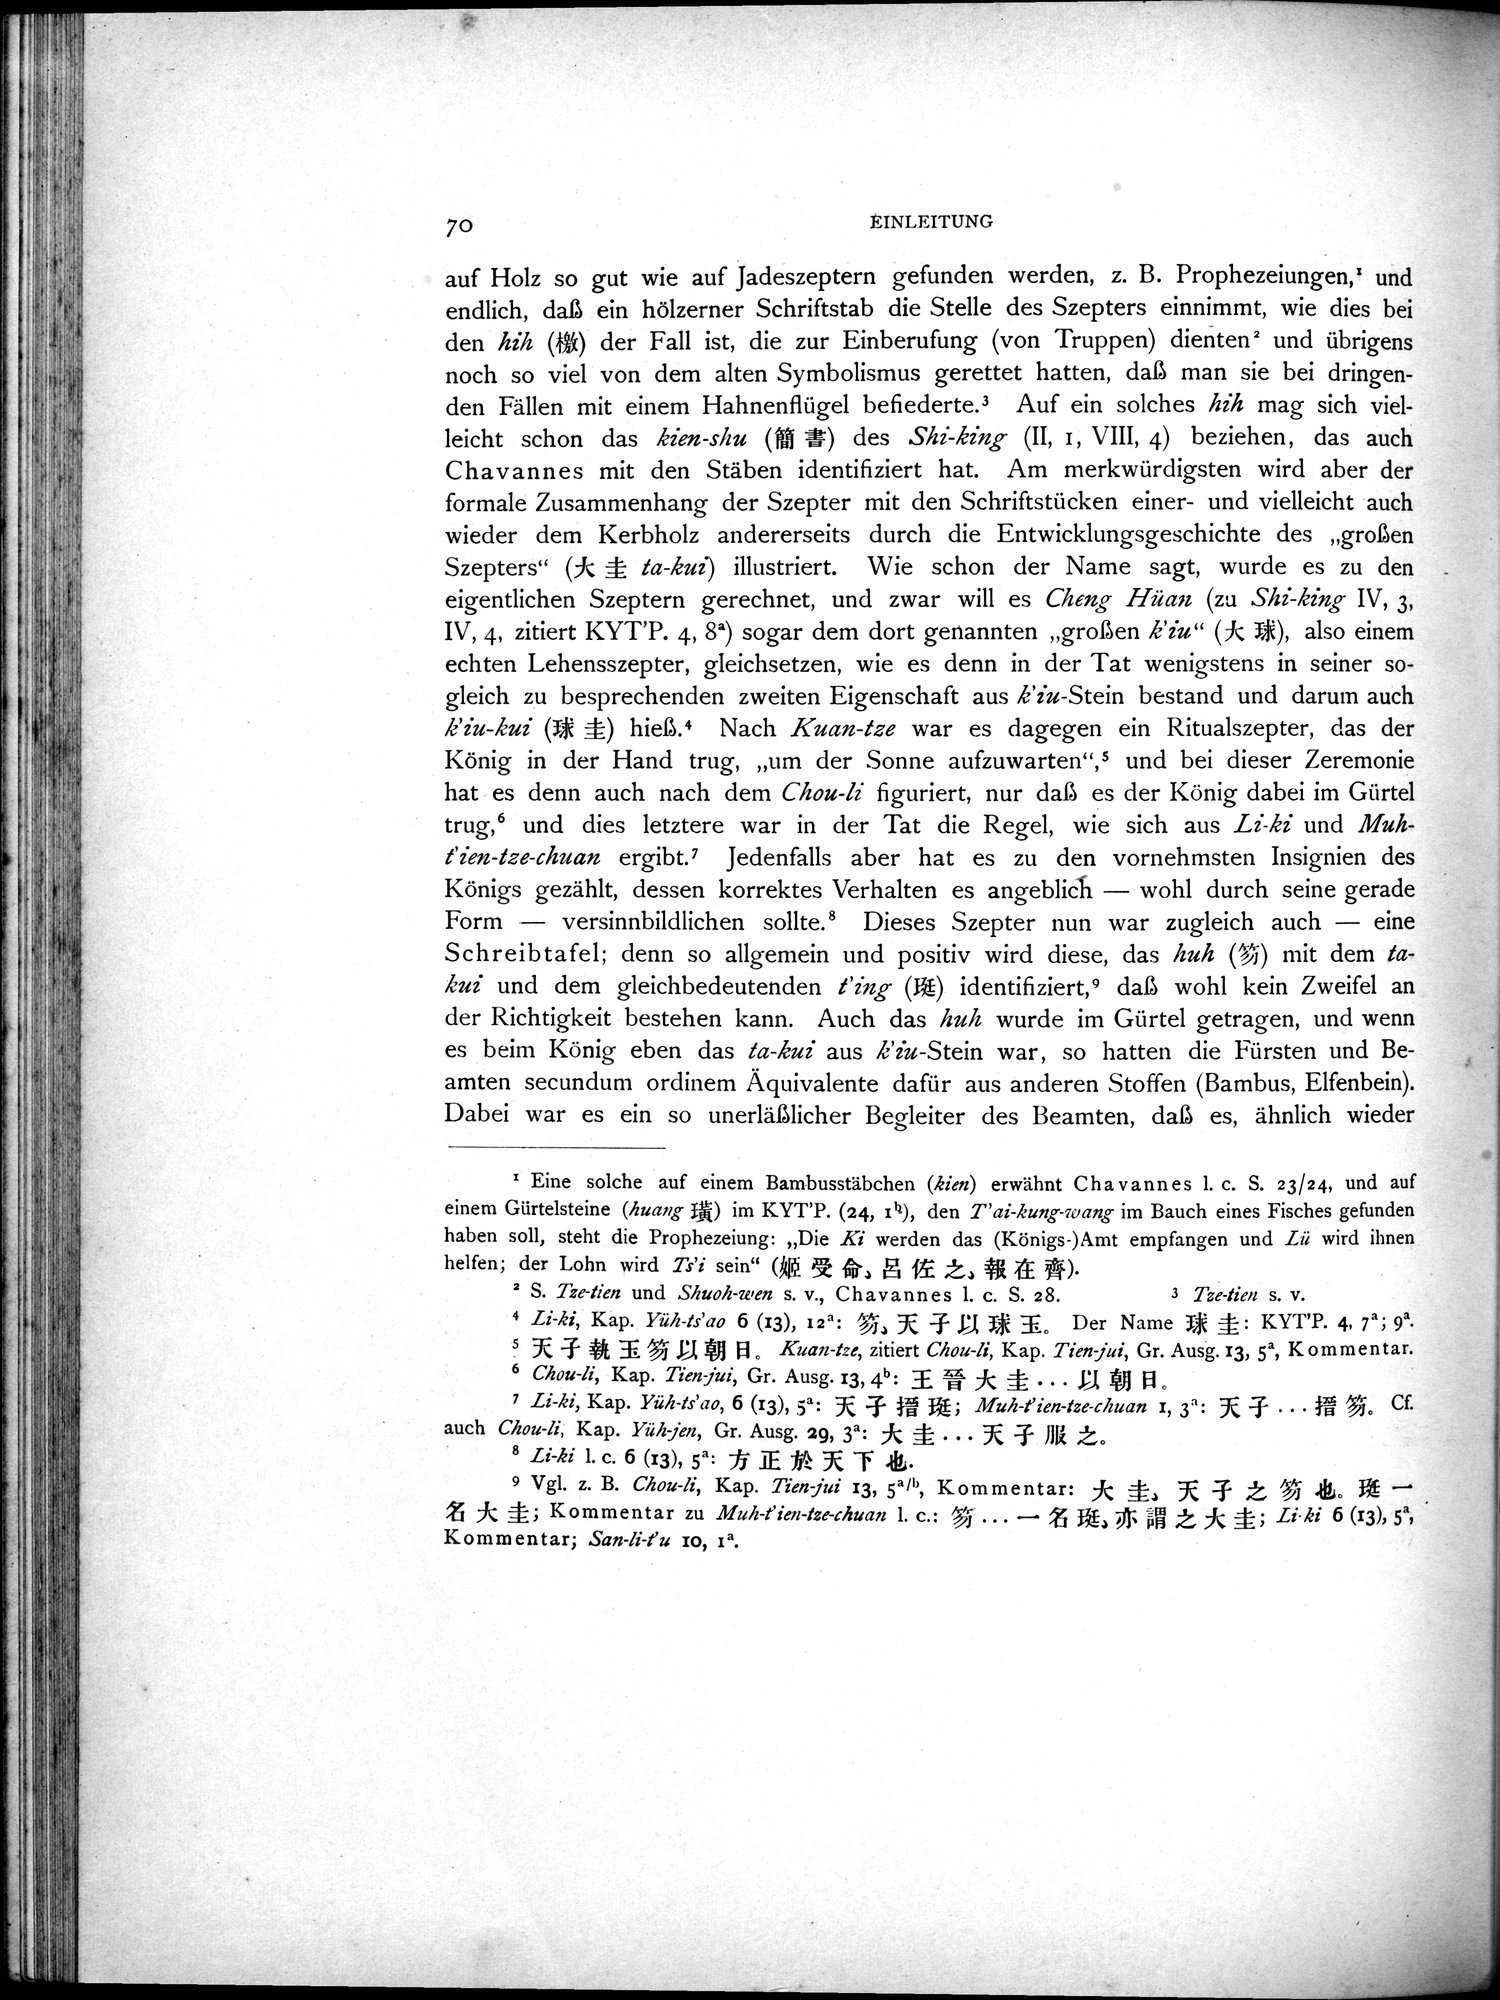 Die Chinesischen Handschriften- und sonstigen Kleinfunde Sven Hedins in Lou-lan : vol.1 / Page 94 (Grayscale High Resolution Image)